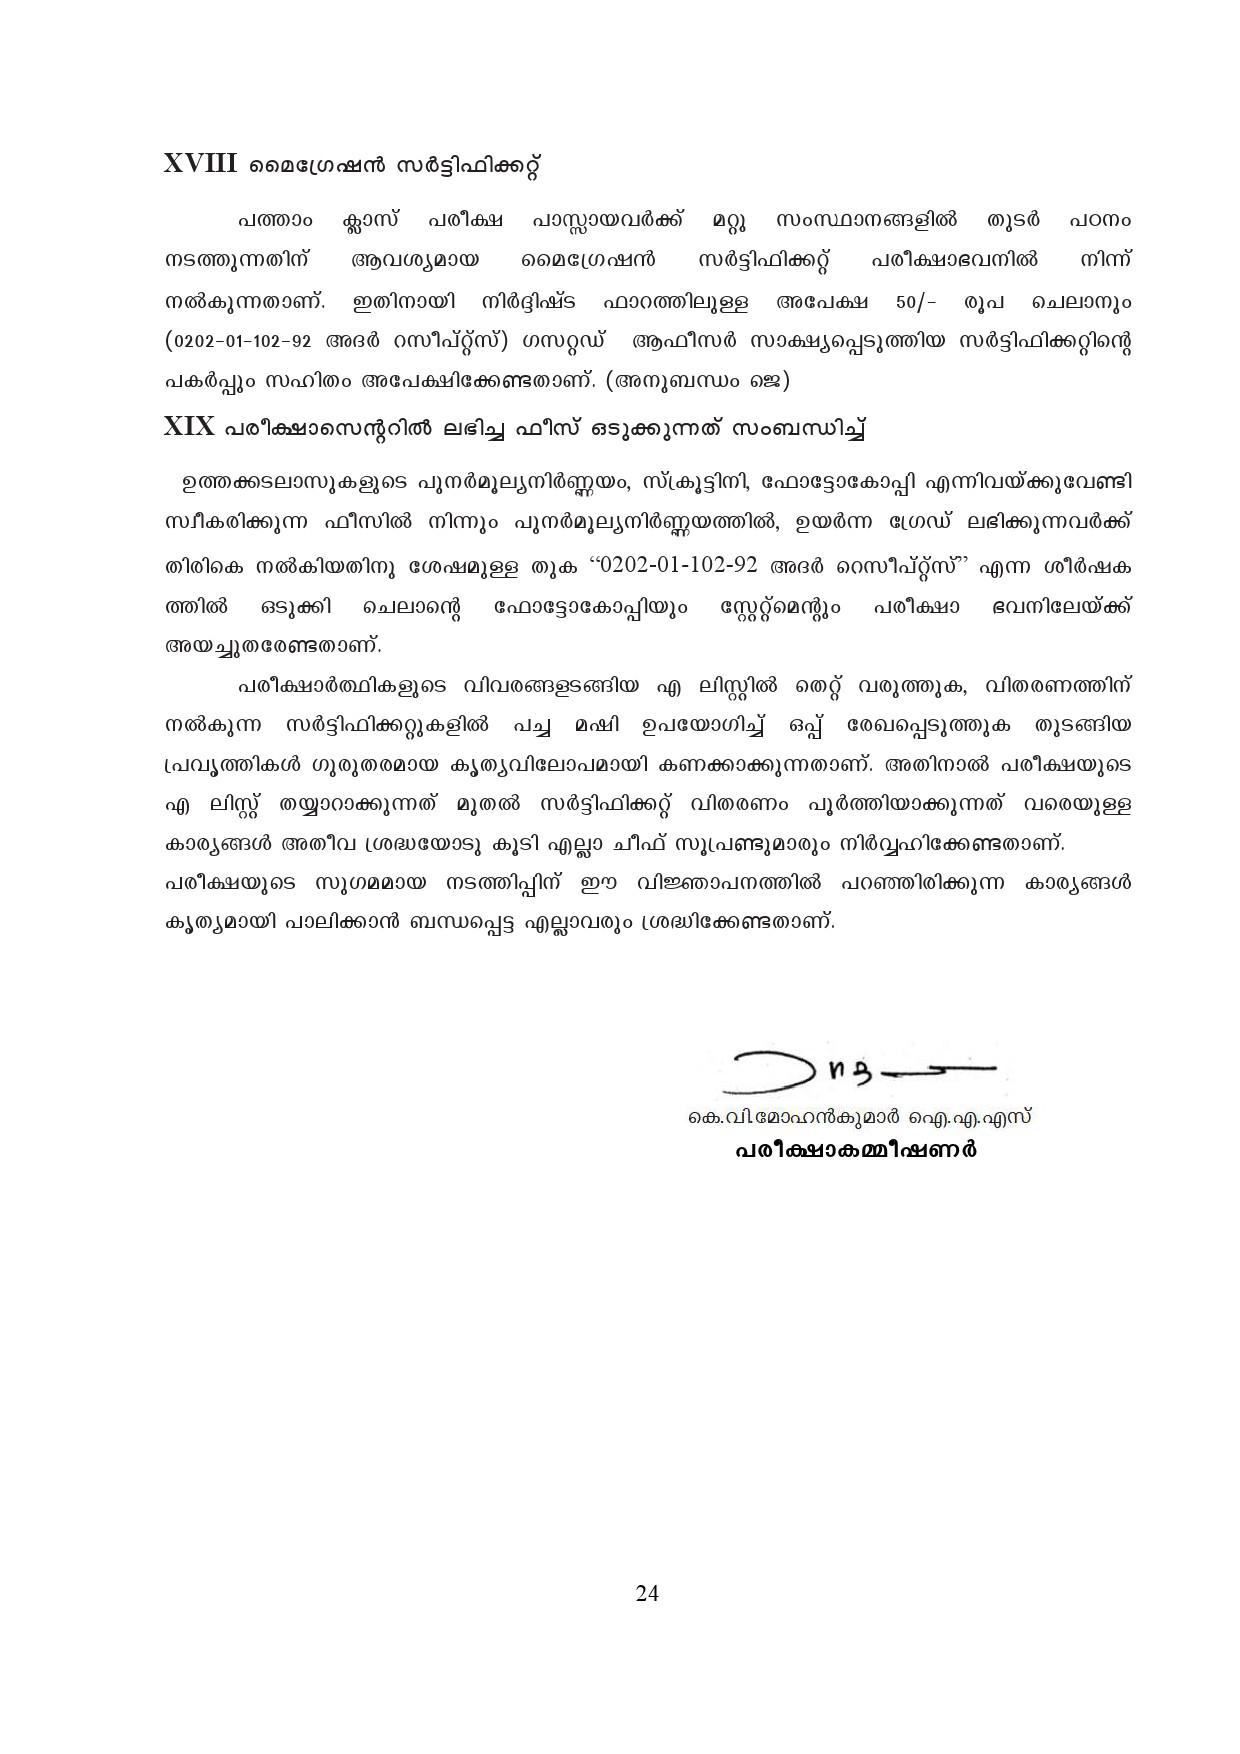 Kerala SSLC Exam Result 2019 - Notification Image 24